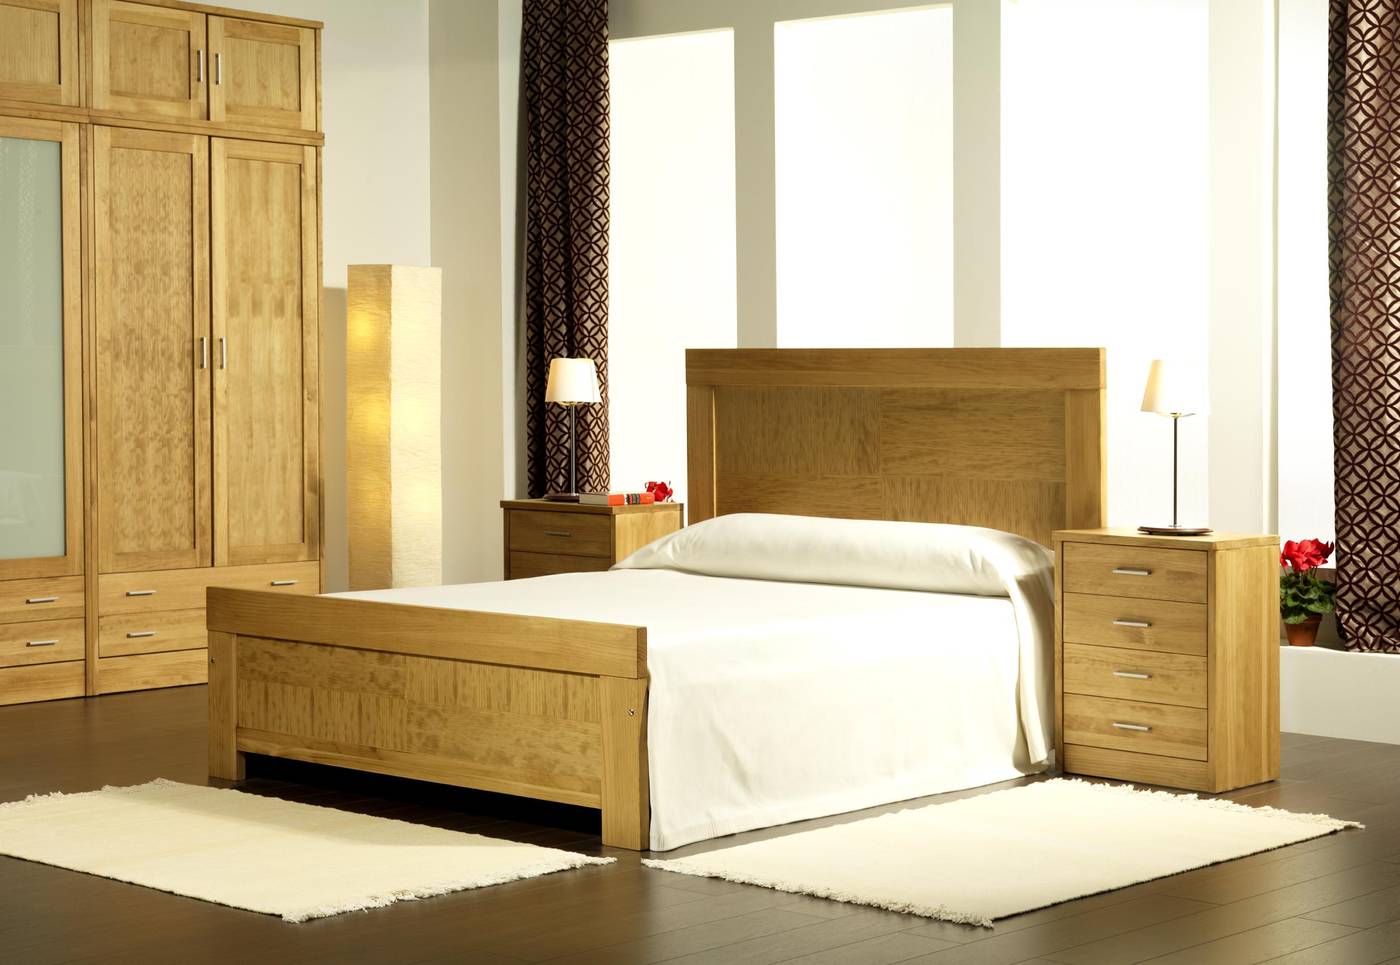 Cabezal Coral Aguas - Cabecero de cama de madera maciza, disponible en varias medidas y colores de madera.